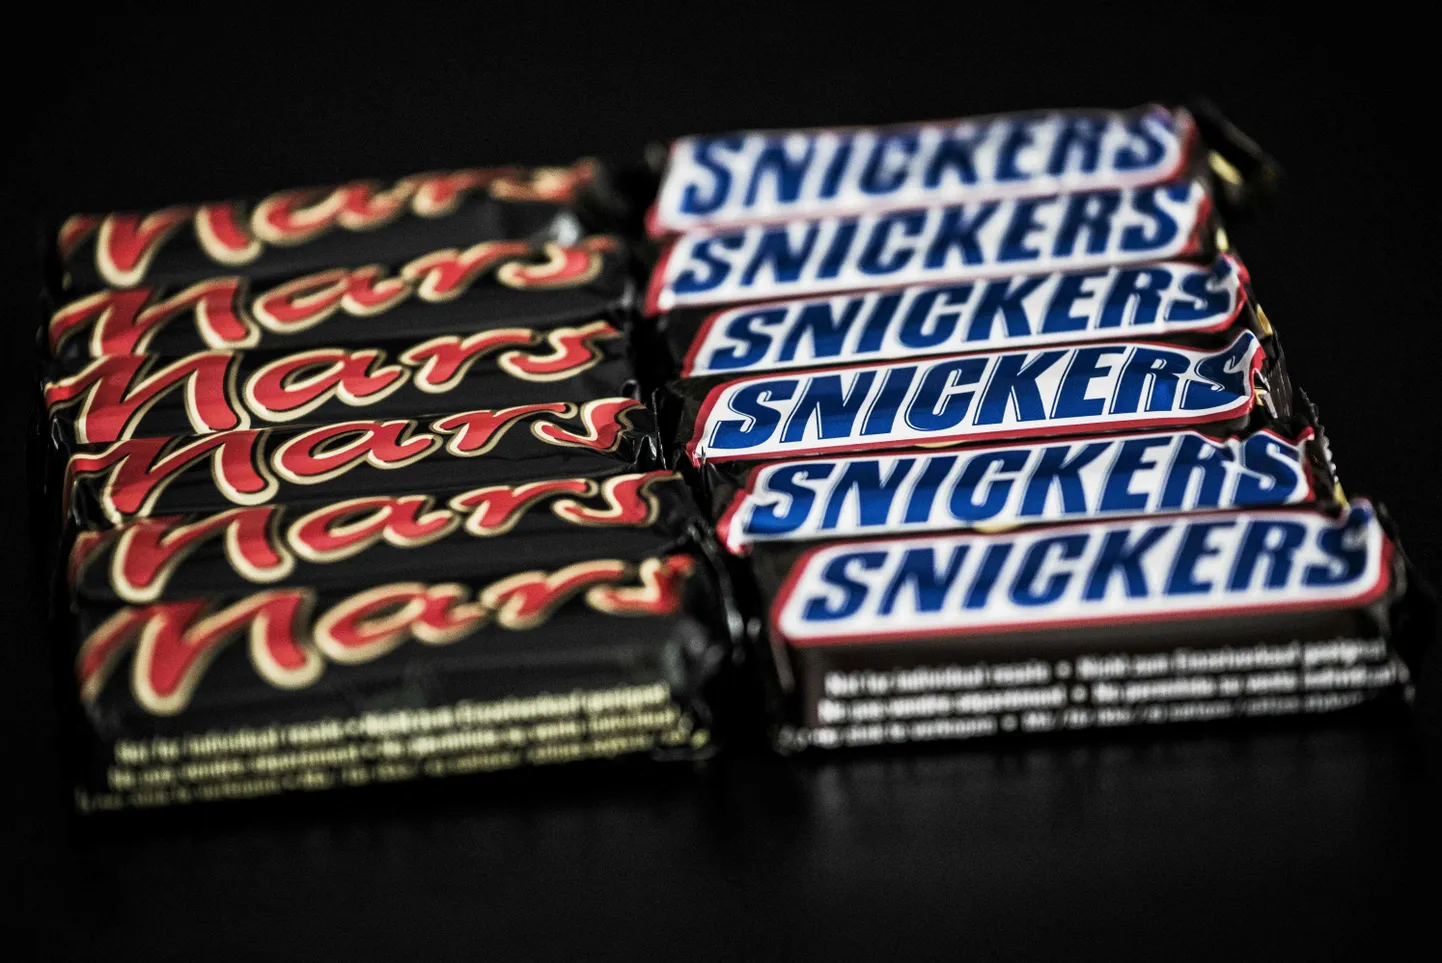 Шоколадки Mars и Snickers.